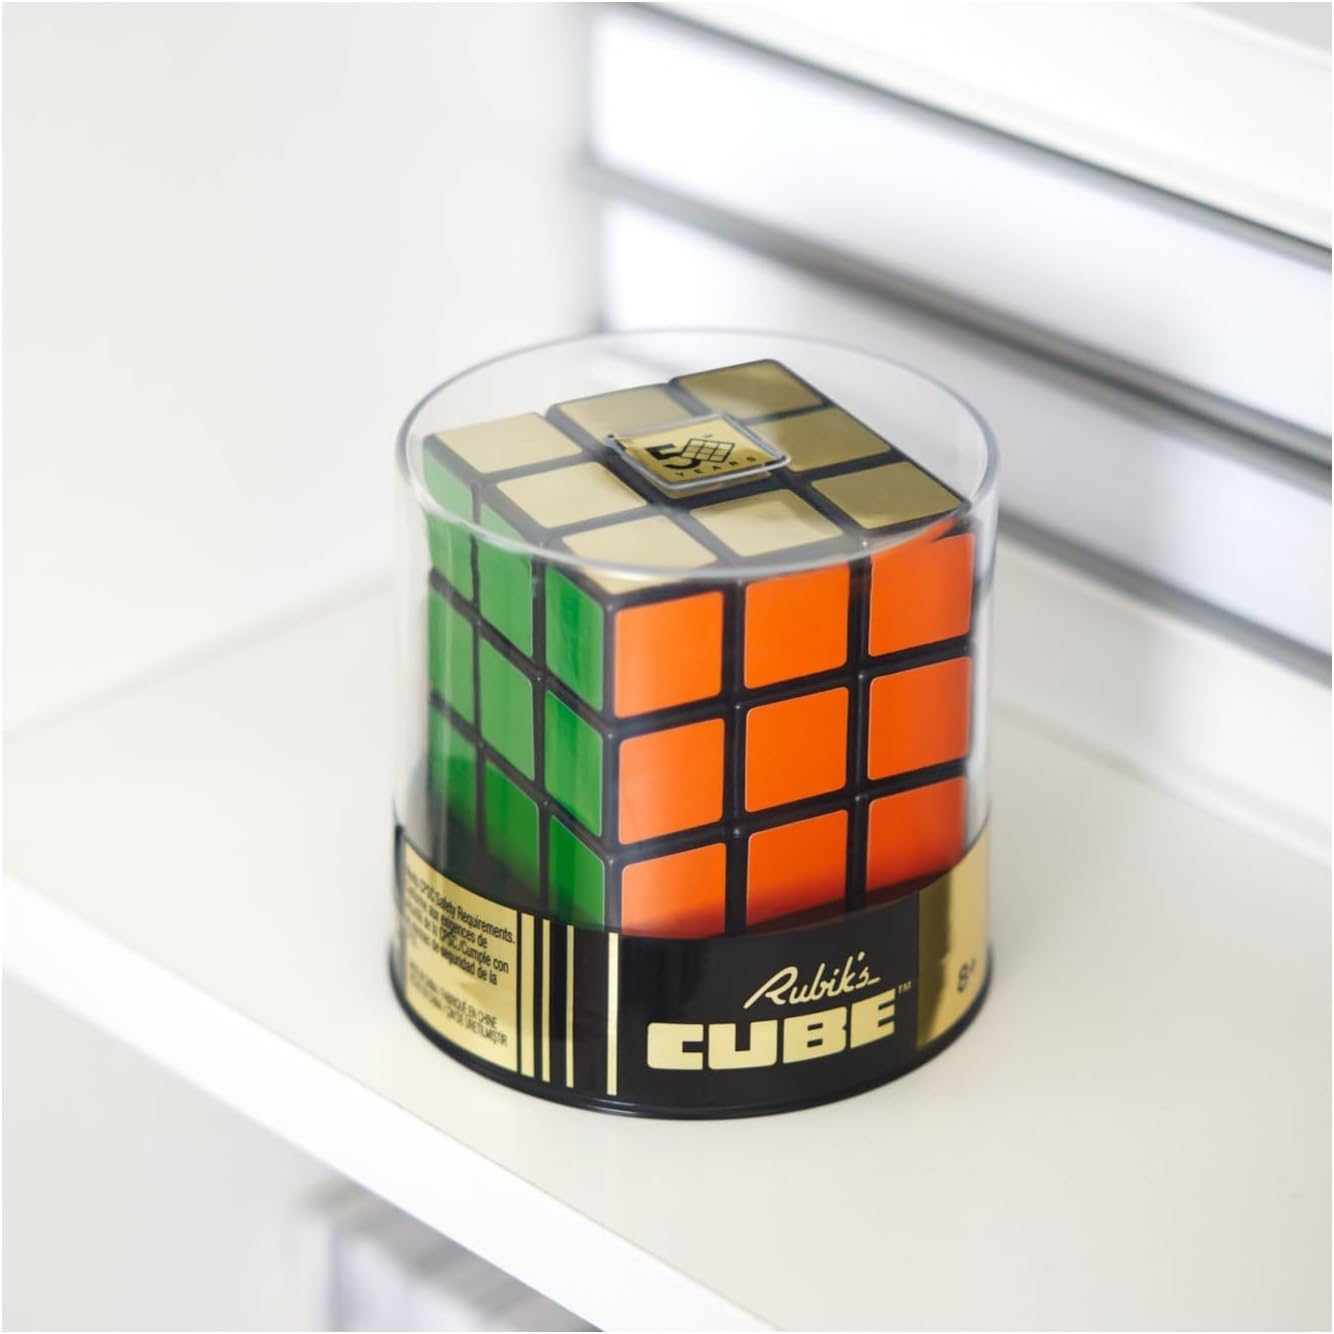 Spin 6068726 Rubik's Spin Master Il Cubo di Rubik Retro 3X3 50° Anniversario